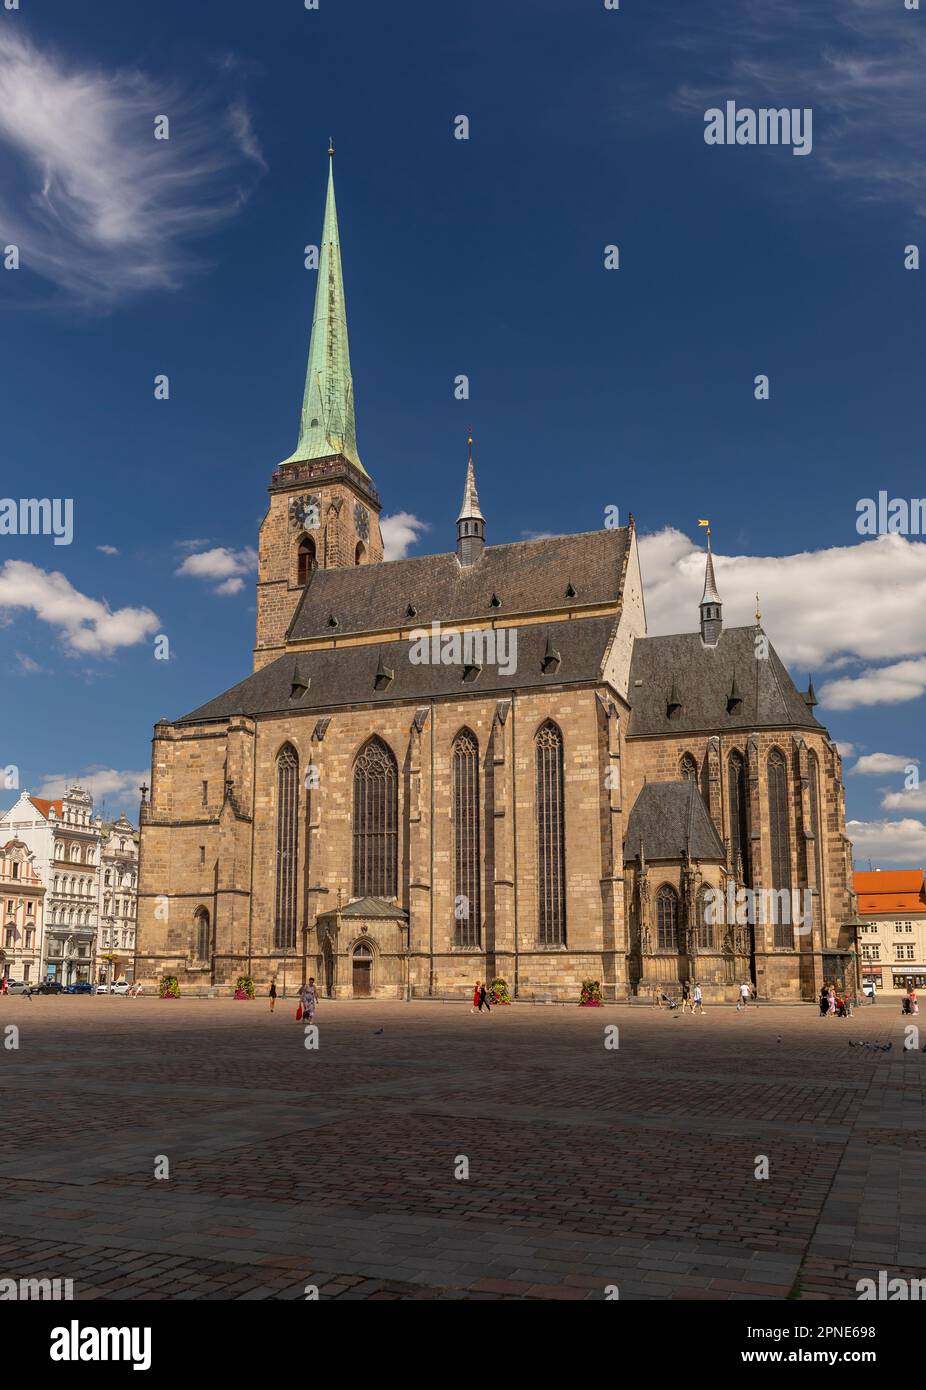 PILSEN, TSCHECHISCHE REPUBLIK, EUROPA - die Kathedrale von St. Bartholomew, eine gotische Kirche auf dem Hauptplatz von Pilsen. Stockfoto